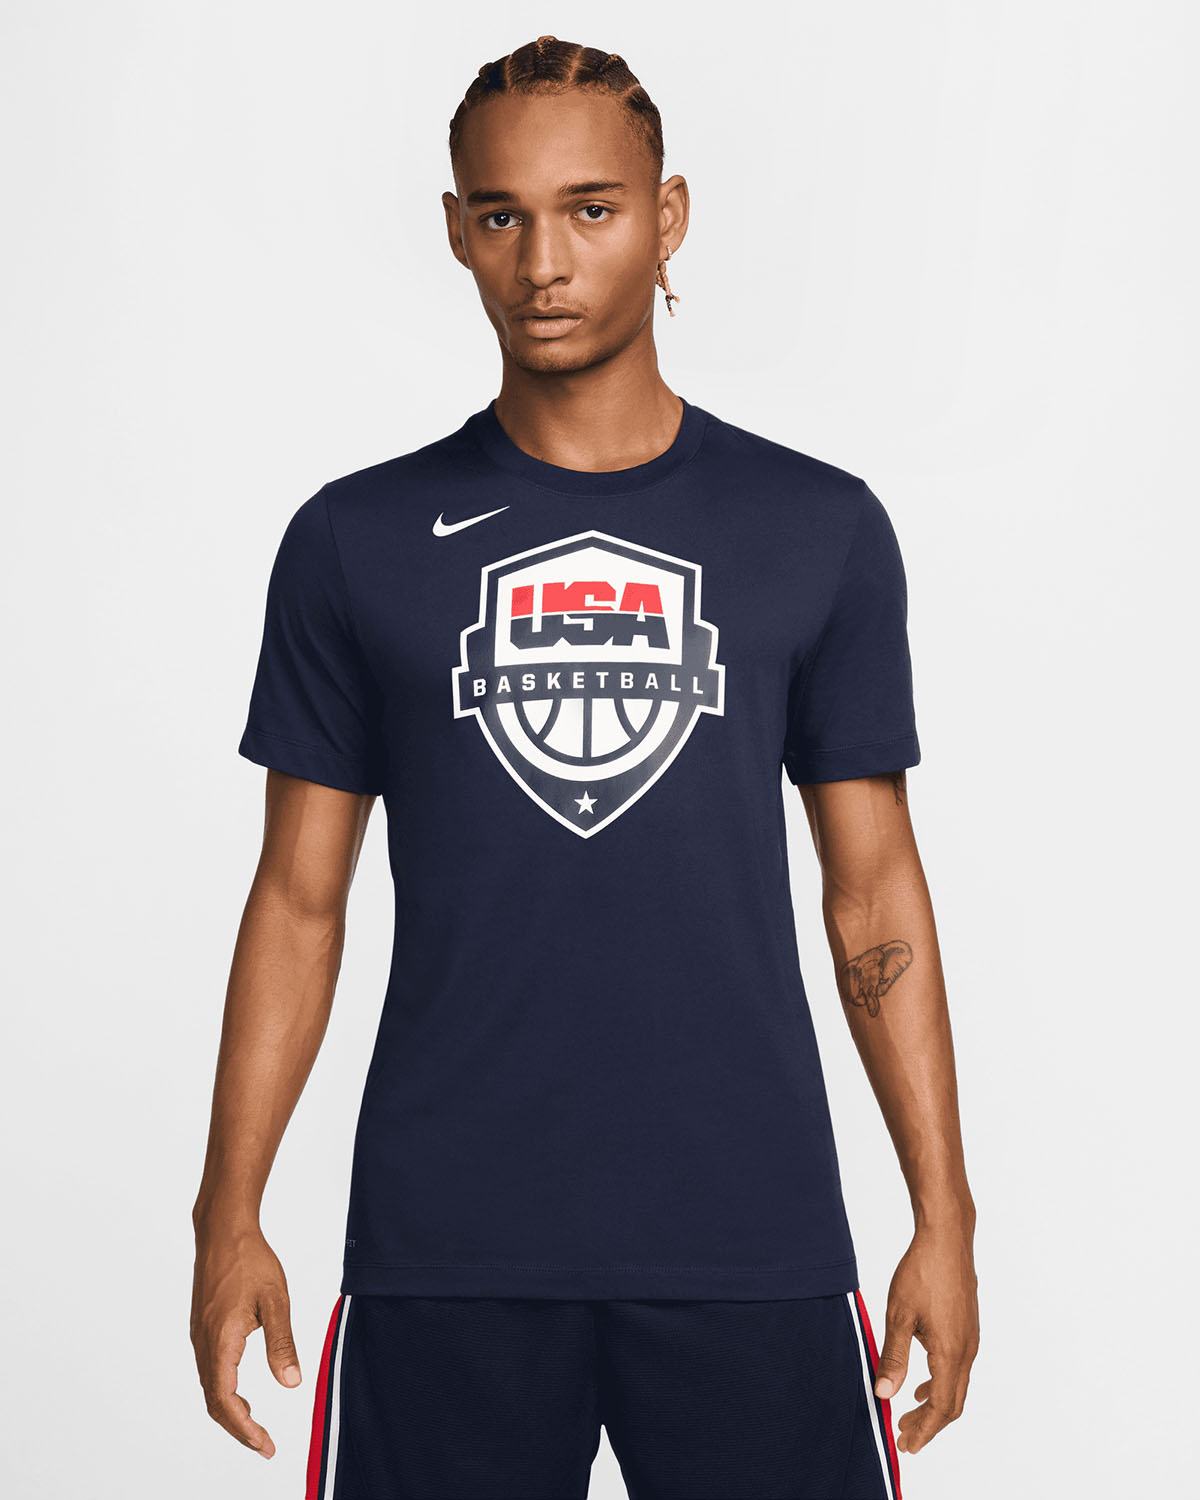 Nike USA Basketball Olympic 2024 T Shirt Navy